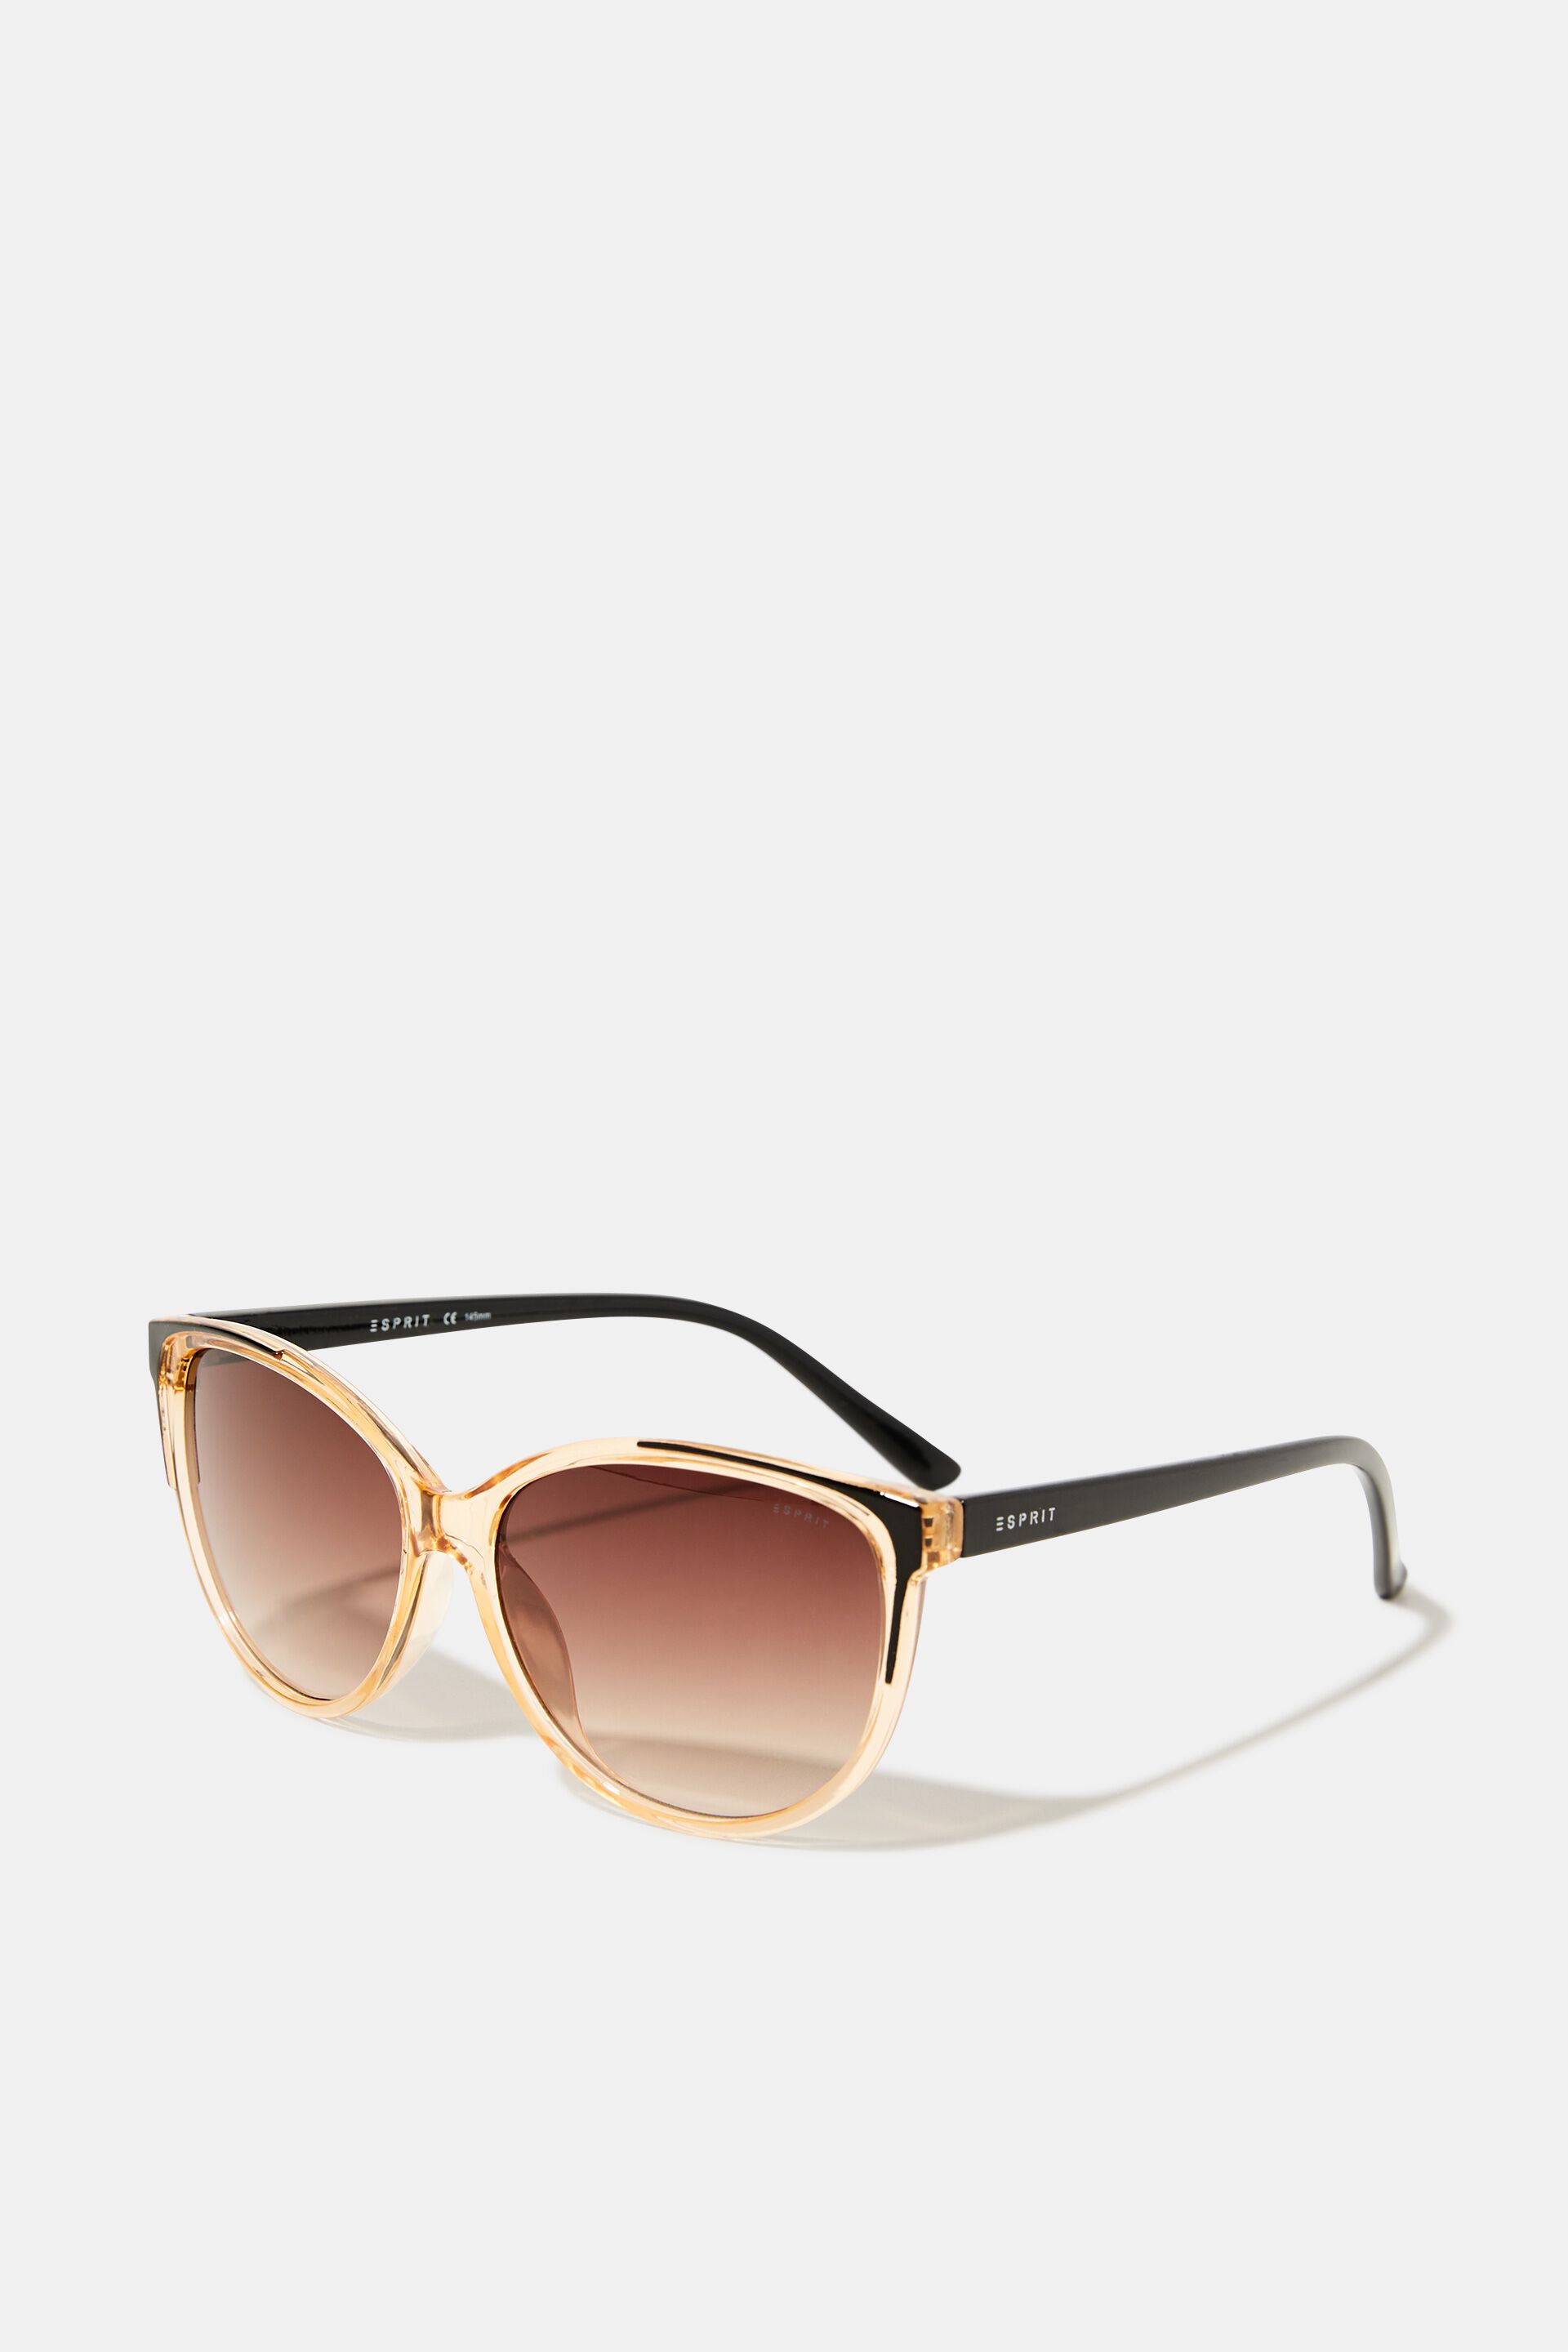 Esprit transparent Sunglasses frame with